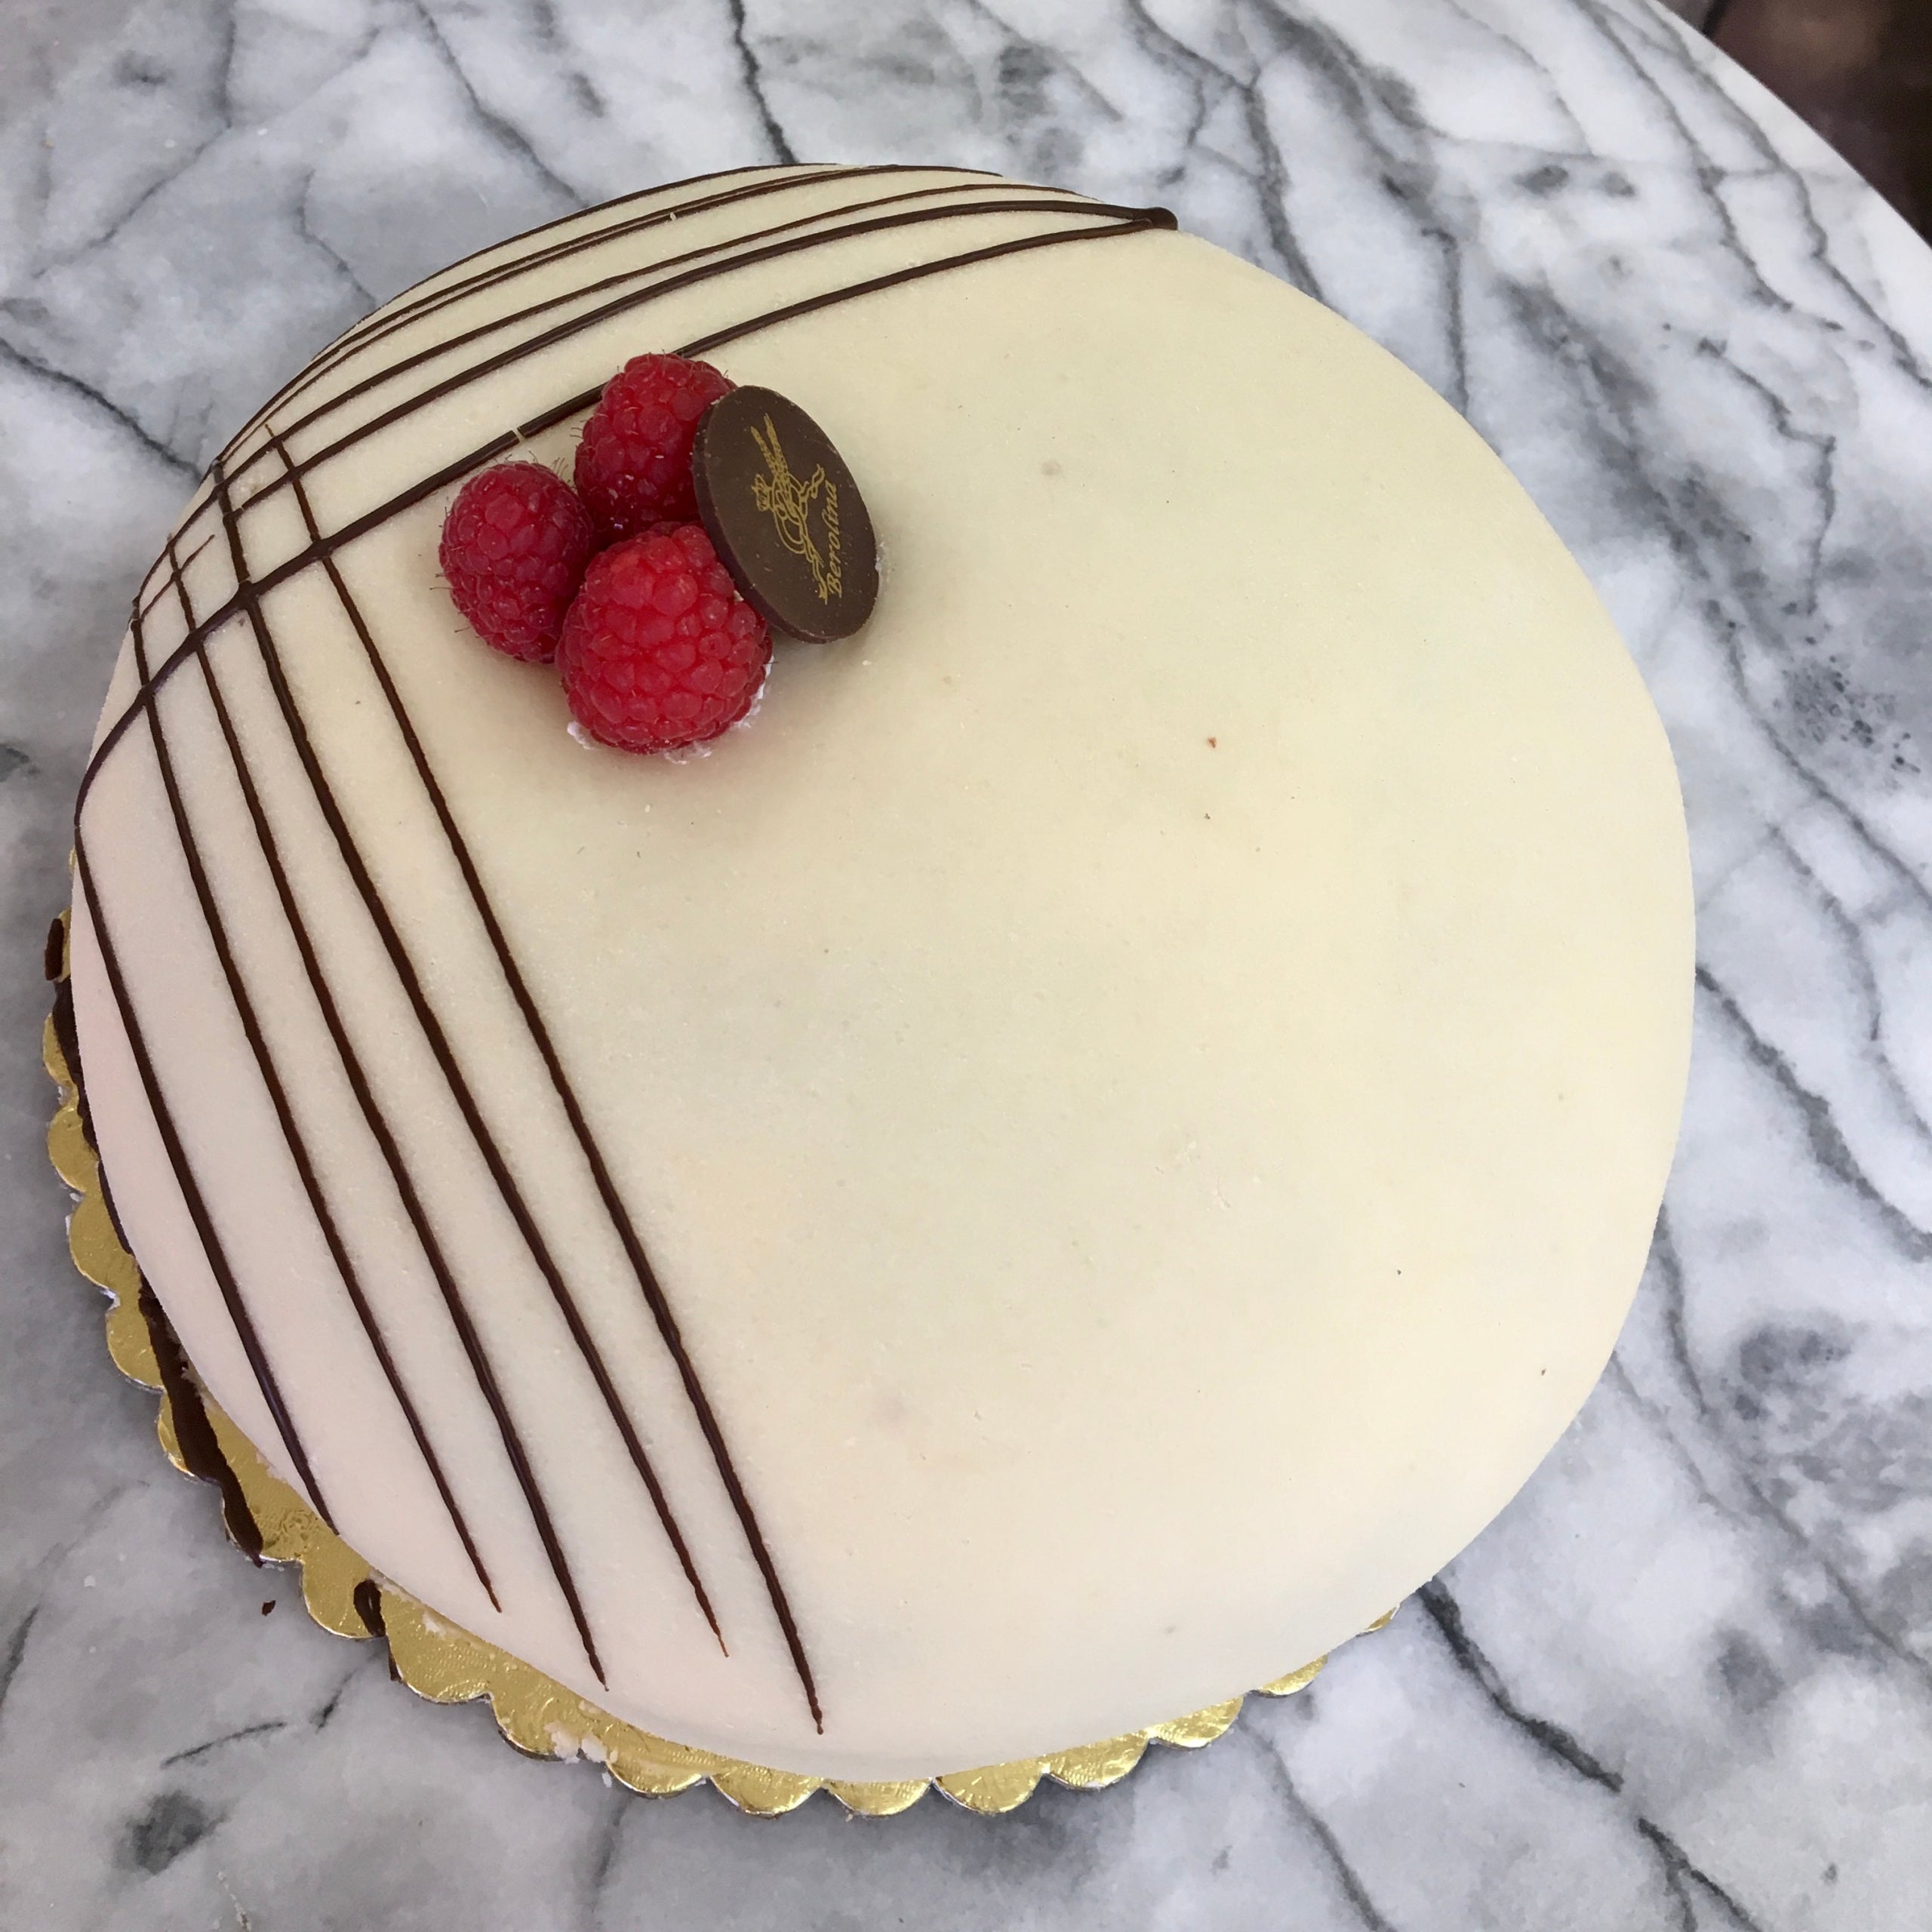 Framboisier cake - The Bake School